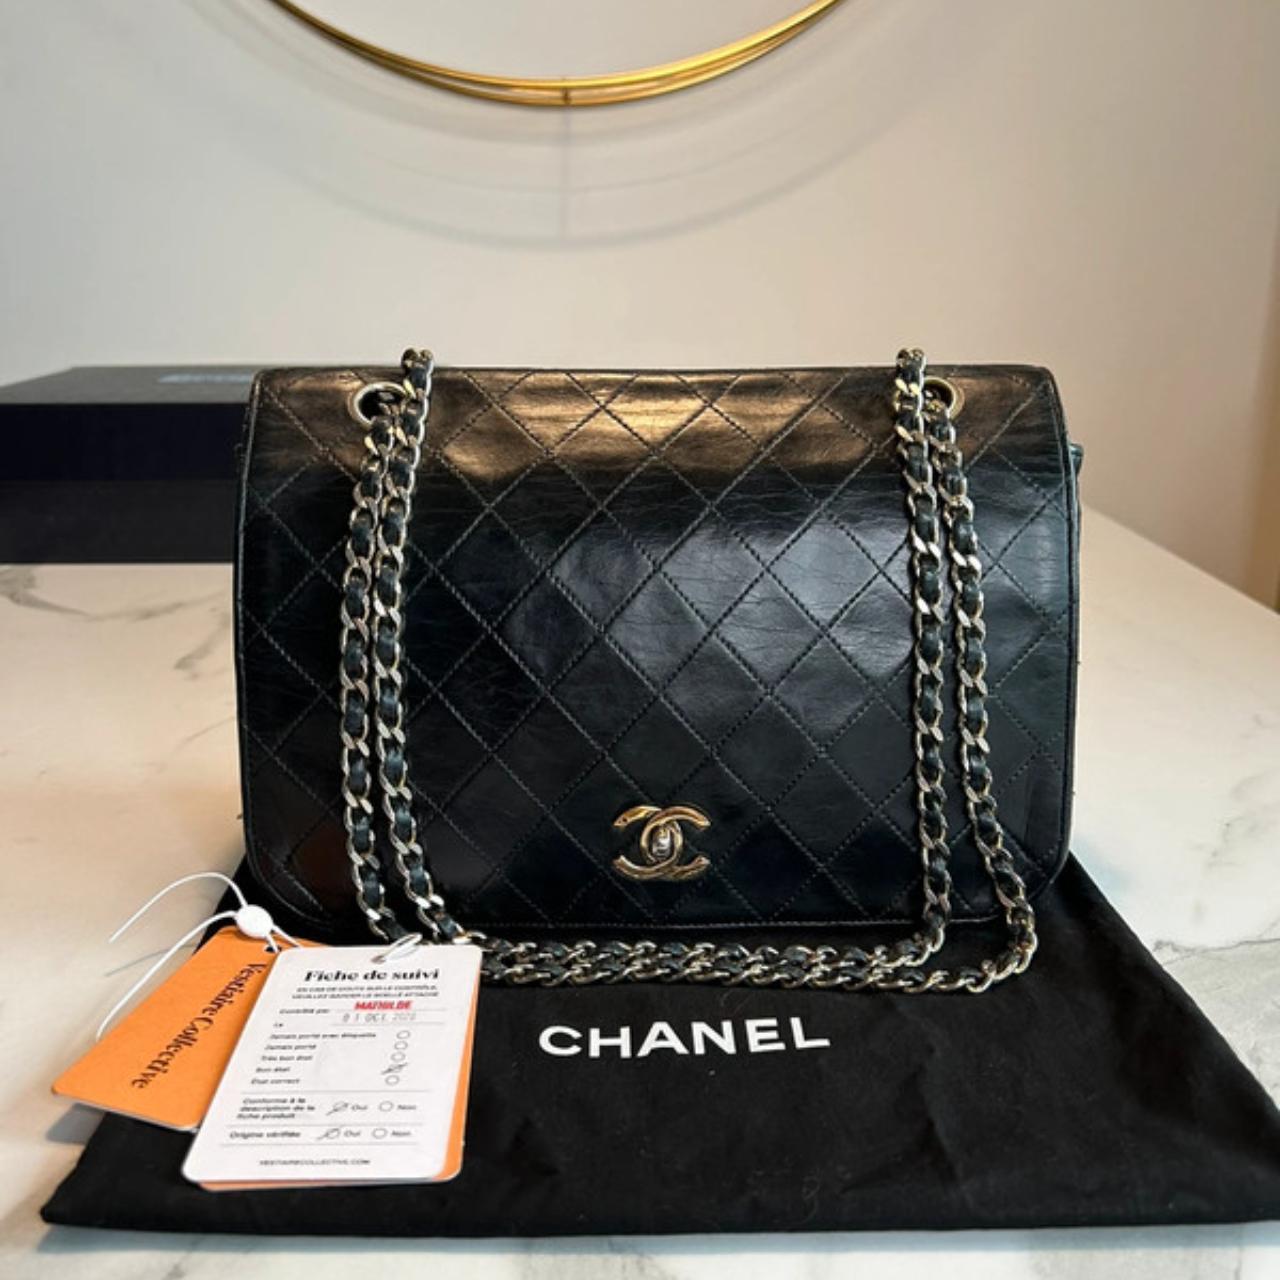 Chanel Eternity Handbag Chanel Eternity handbag... - Depop